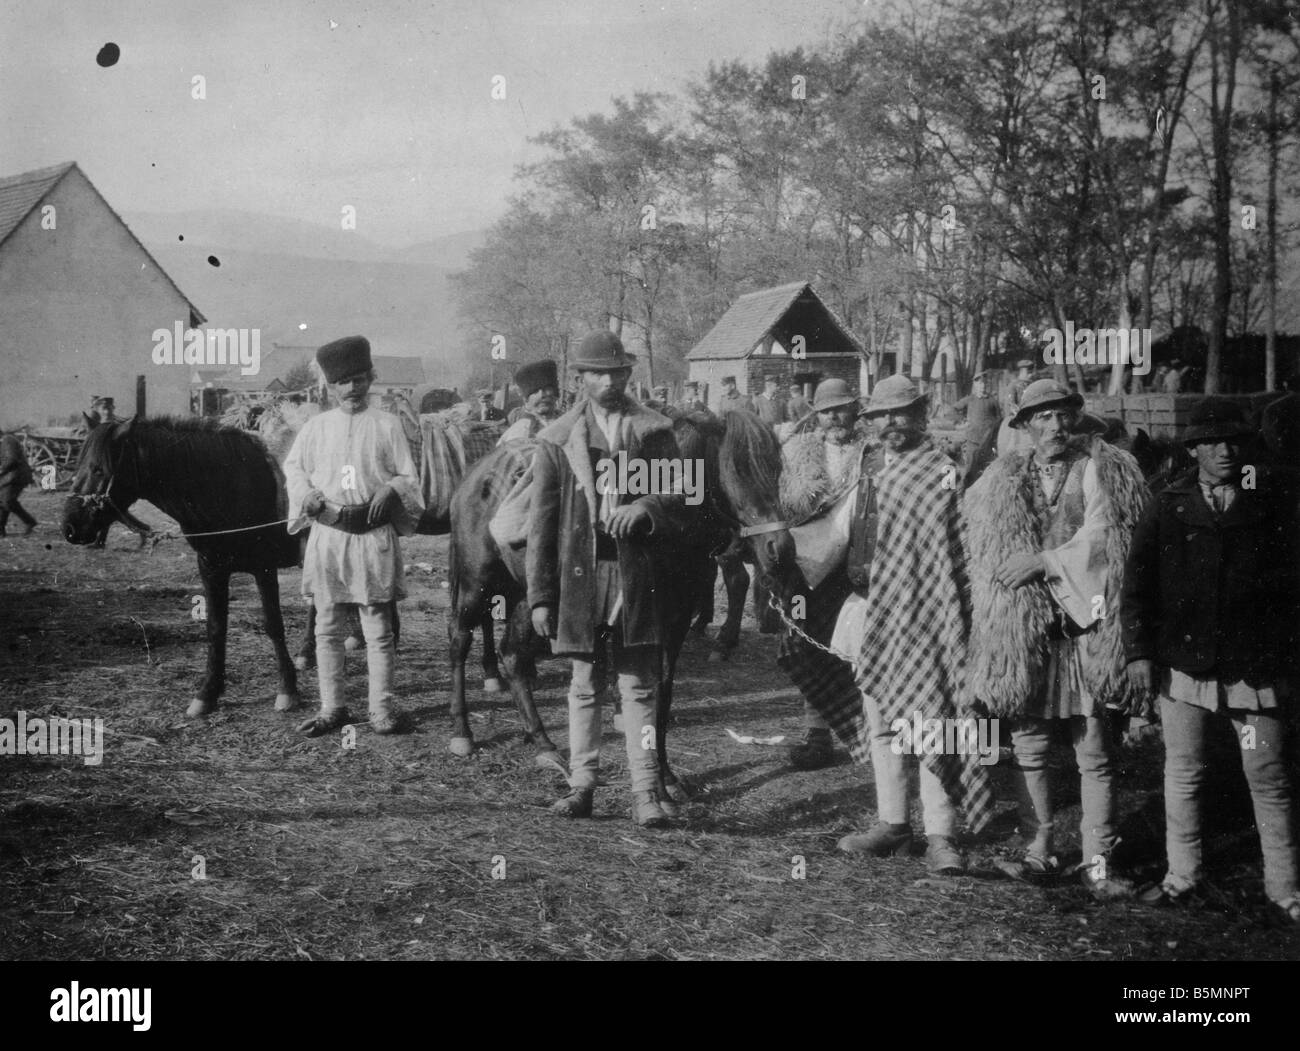 2 V60 U1 1916 E Hongrois avec les chevaux déployée pour la guerre d'Ethnologie de l'Hongrie Hongrois du sud les agriculteurs avec leurs chevaux déployé Banque D'Images